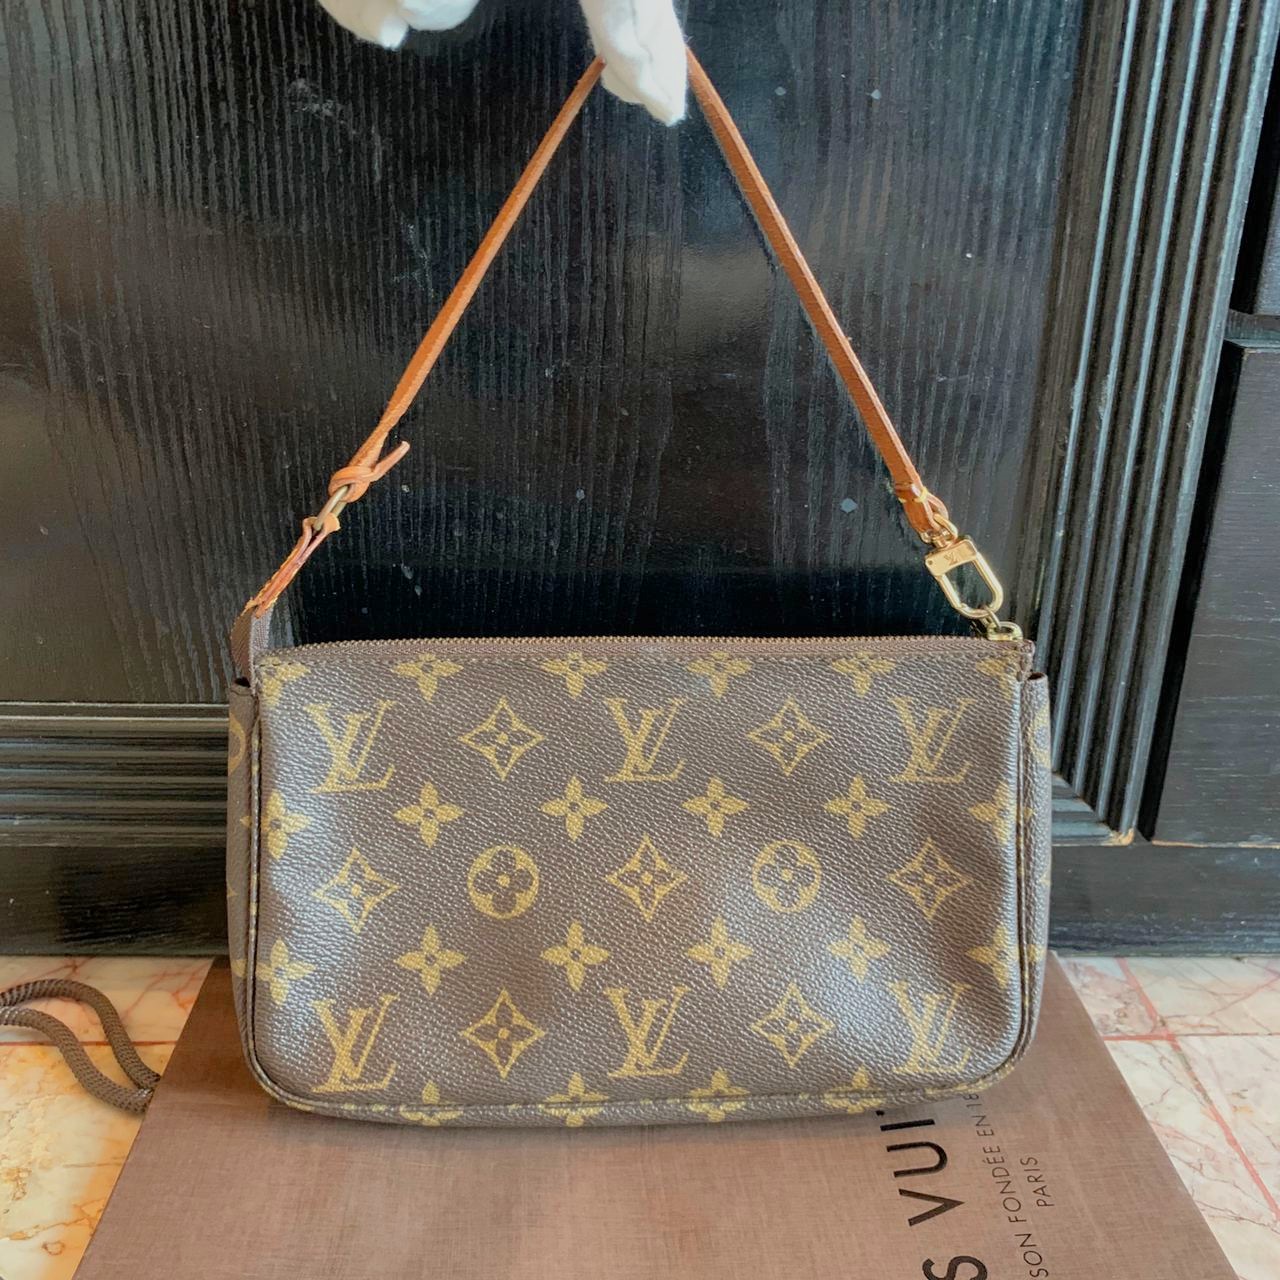 LV pochette accessoires vintage Sling Bag authentic louis Vuitton